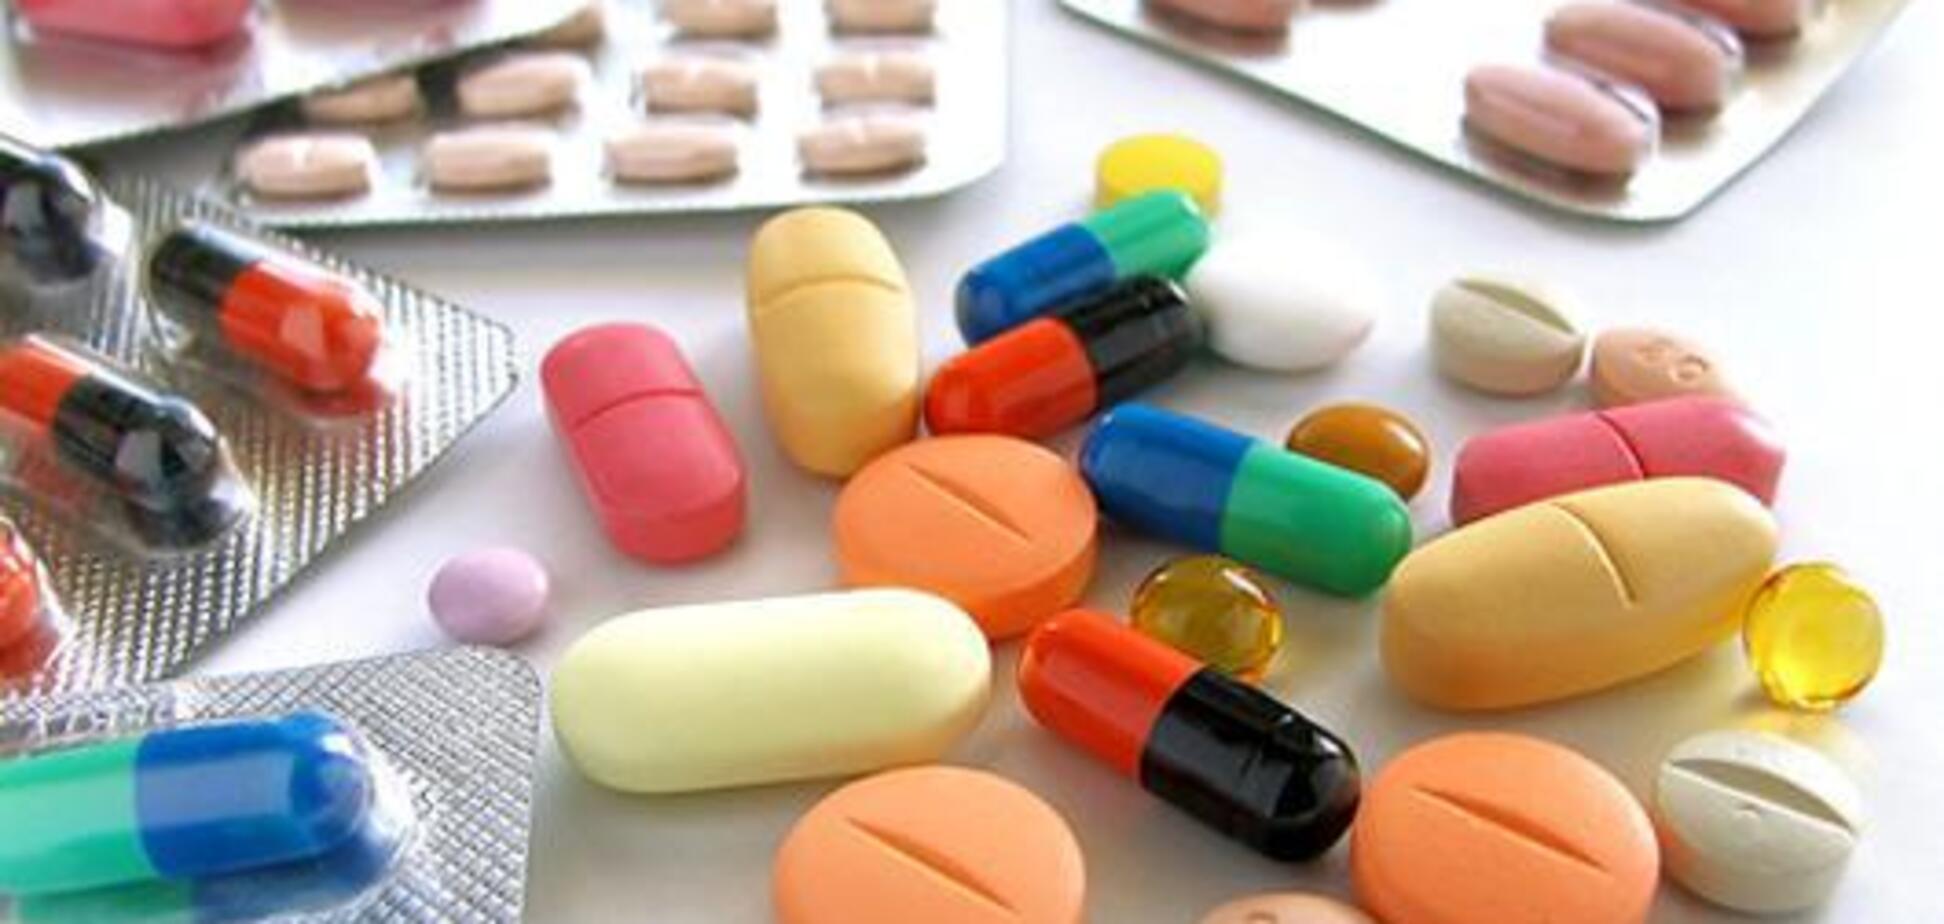 Вплоть до смерти: выяснилась скрытая опасность популярного антибиотика